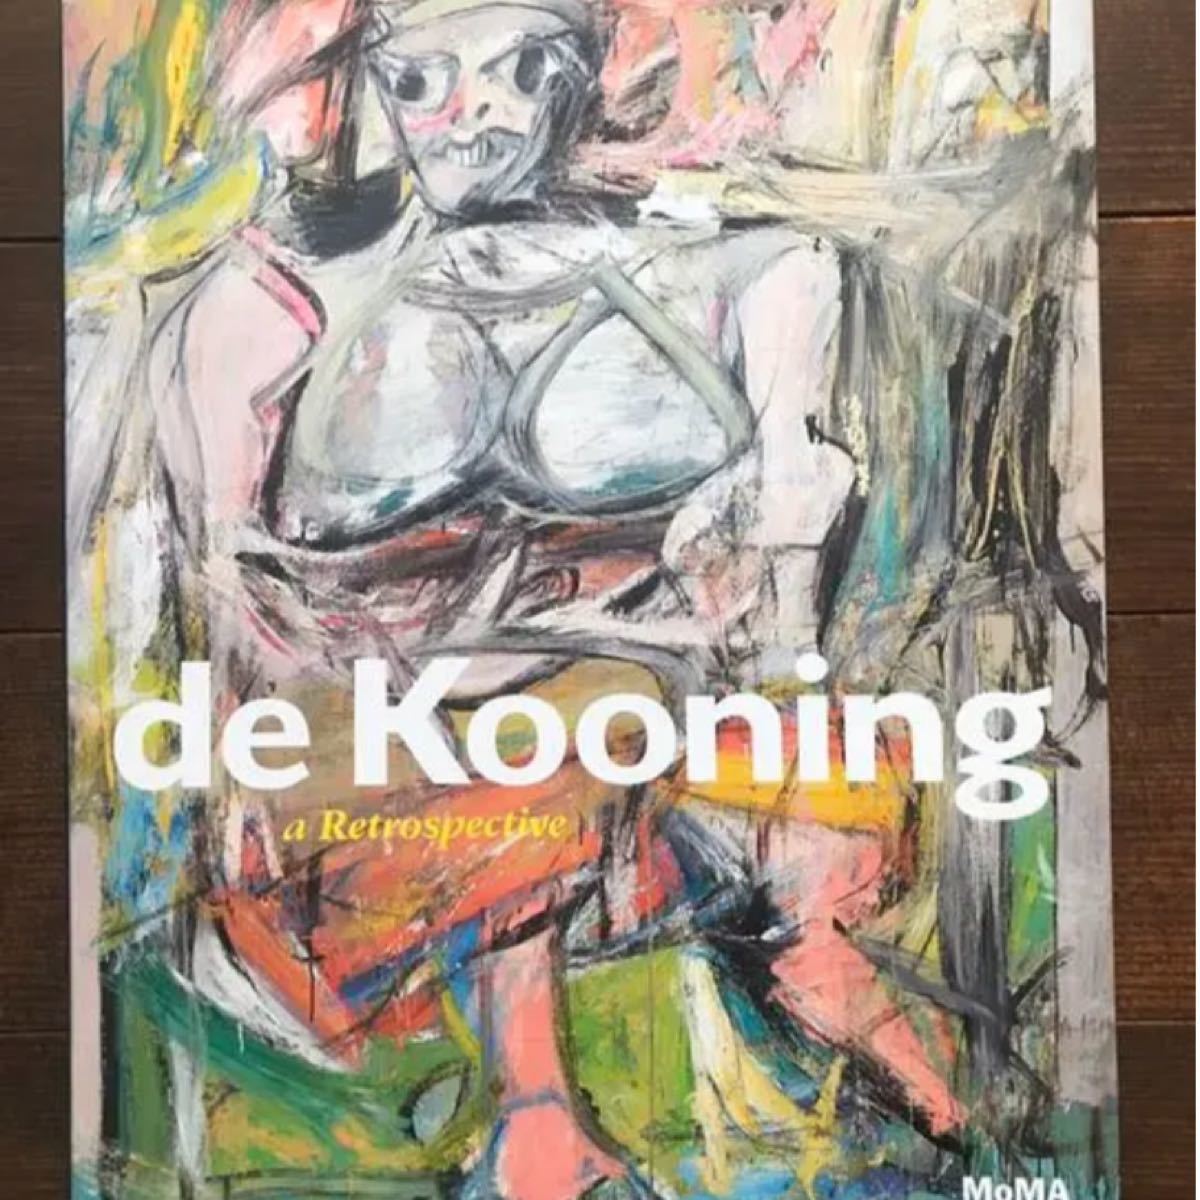 de Kooning｜a Retrospective MOMA デクーニンク画集